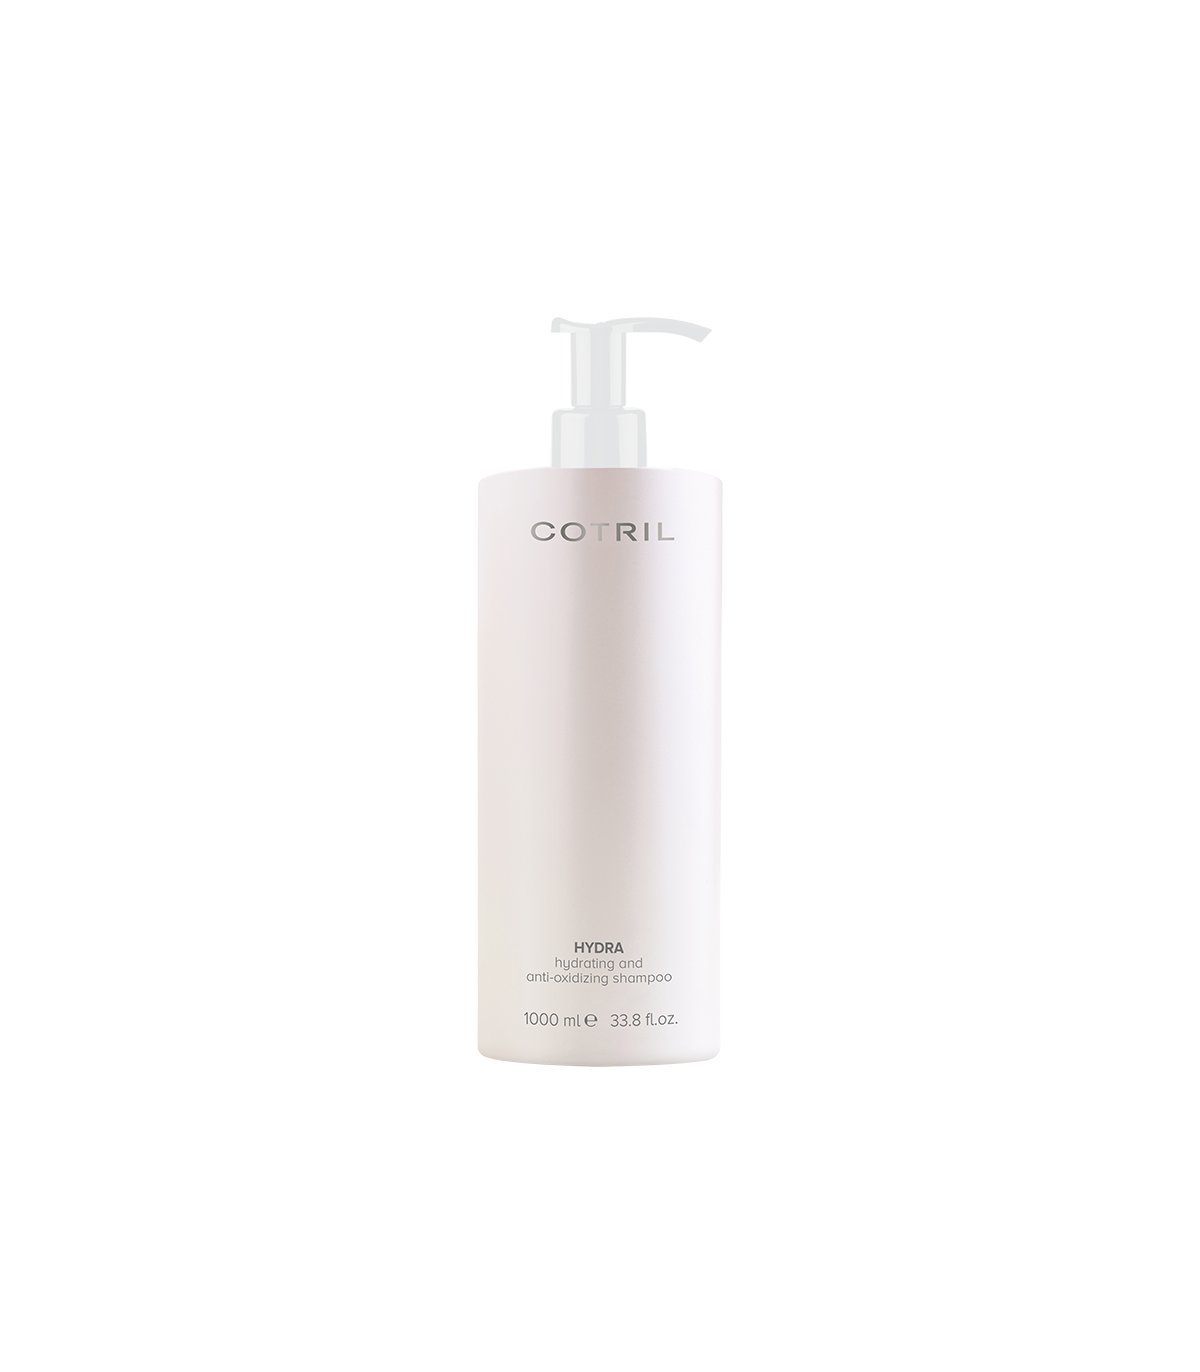 hydra shampoo purify 1000 мл